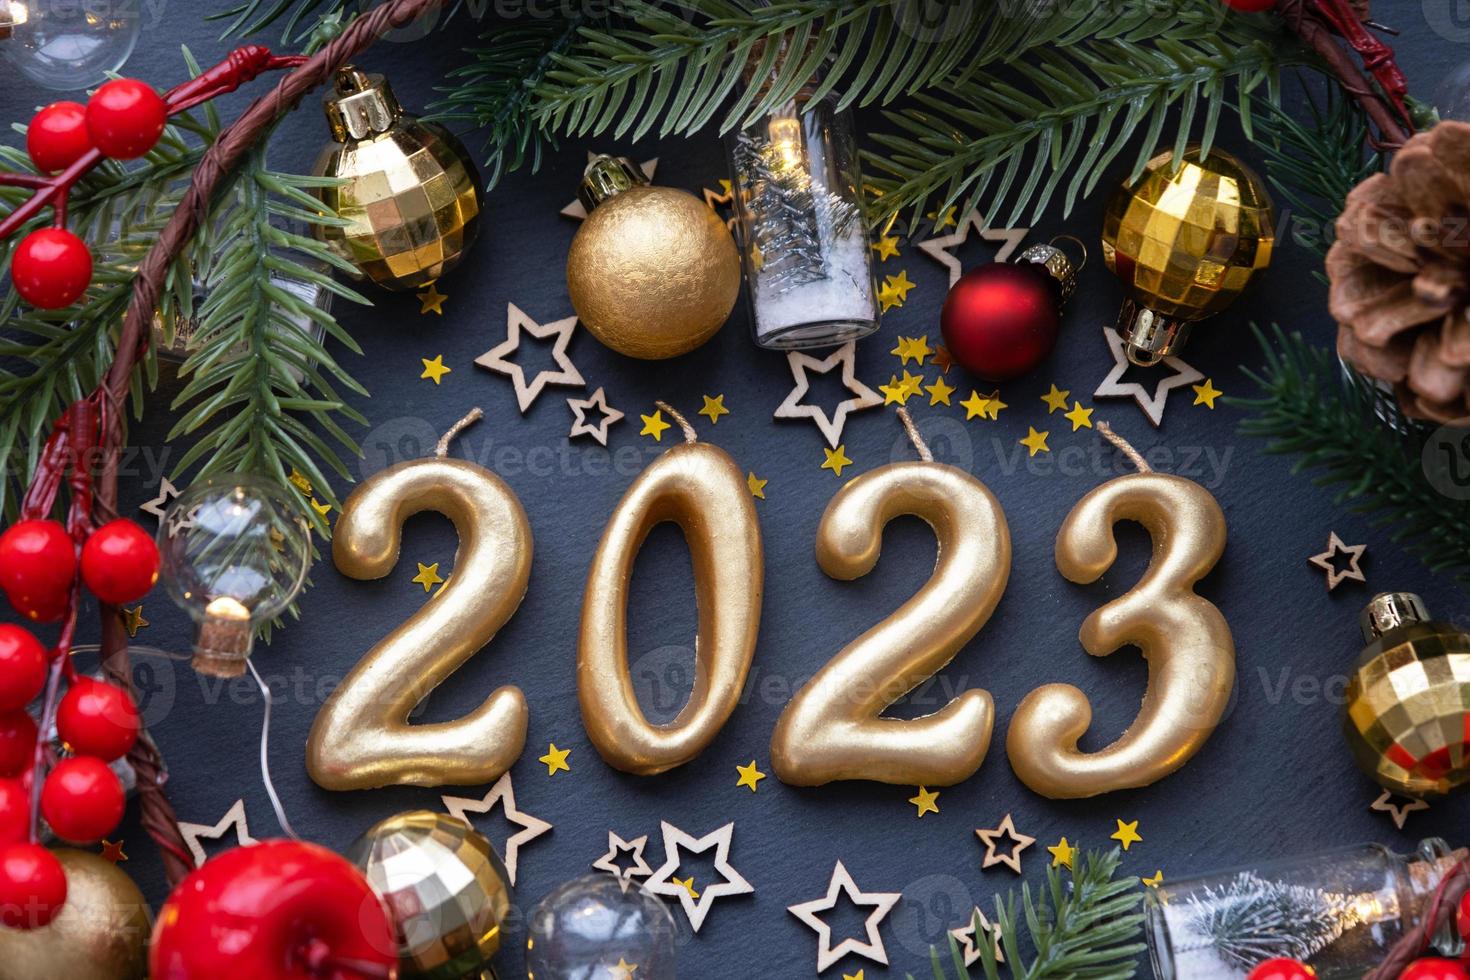 les figures dorées 2023 faites de bougies sur fond d'ardoise en pierre noire sont ornées d'un décor festif d'étoiles, de sequins, de branches de sapin, de boules et de guirlandes. carte de voeux, bonne année. photo